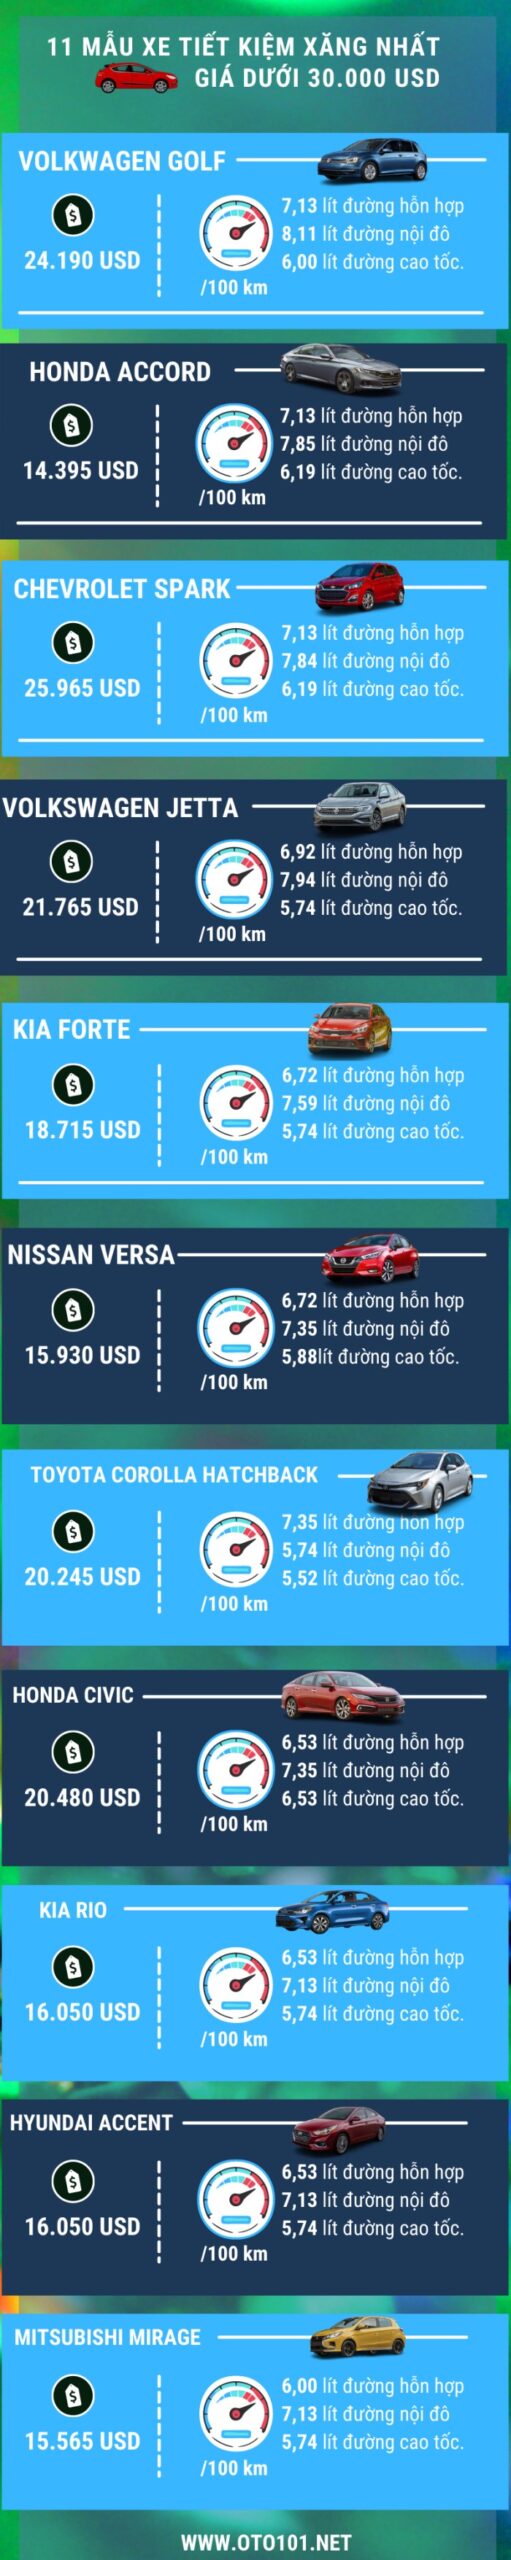 top 11 xe tiết kiệm xăng giá dưới 30000 USD